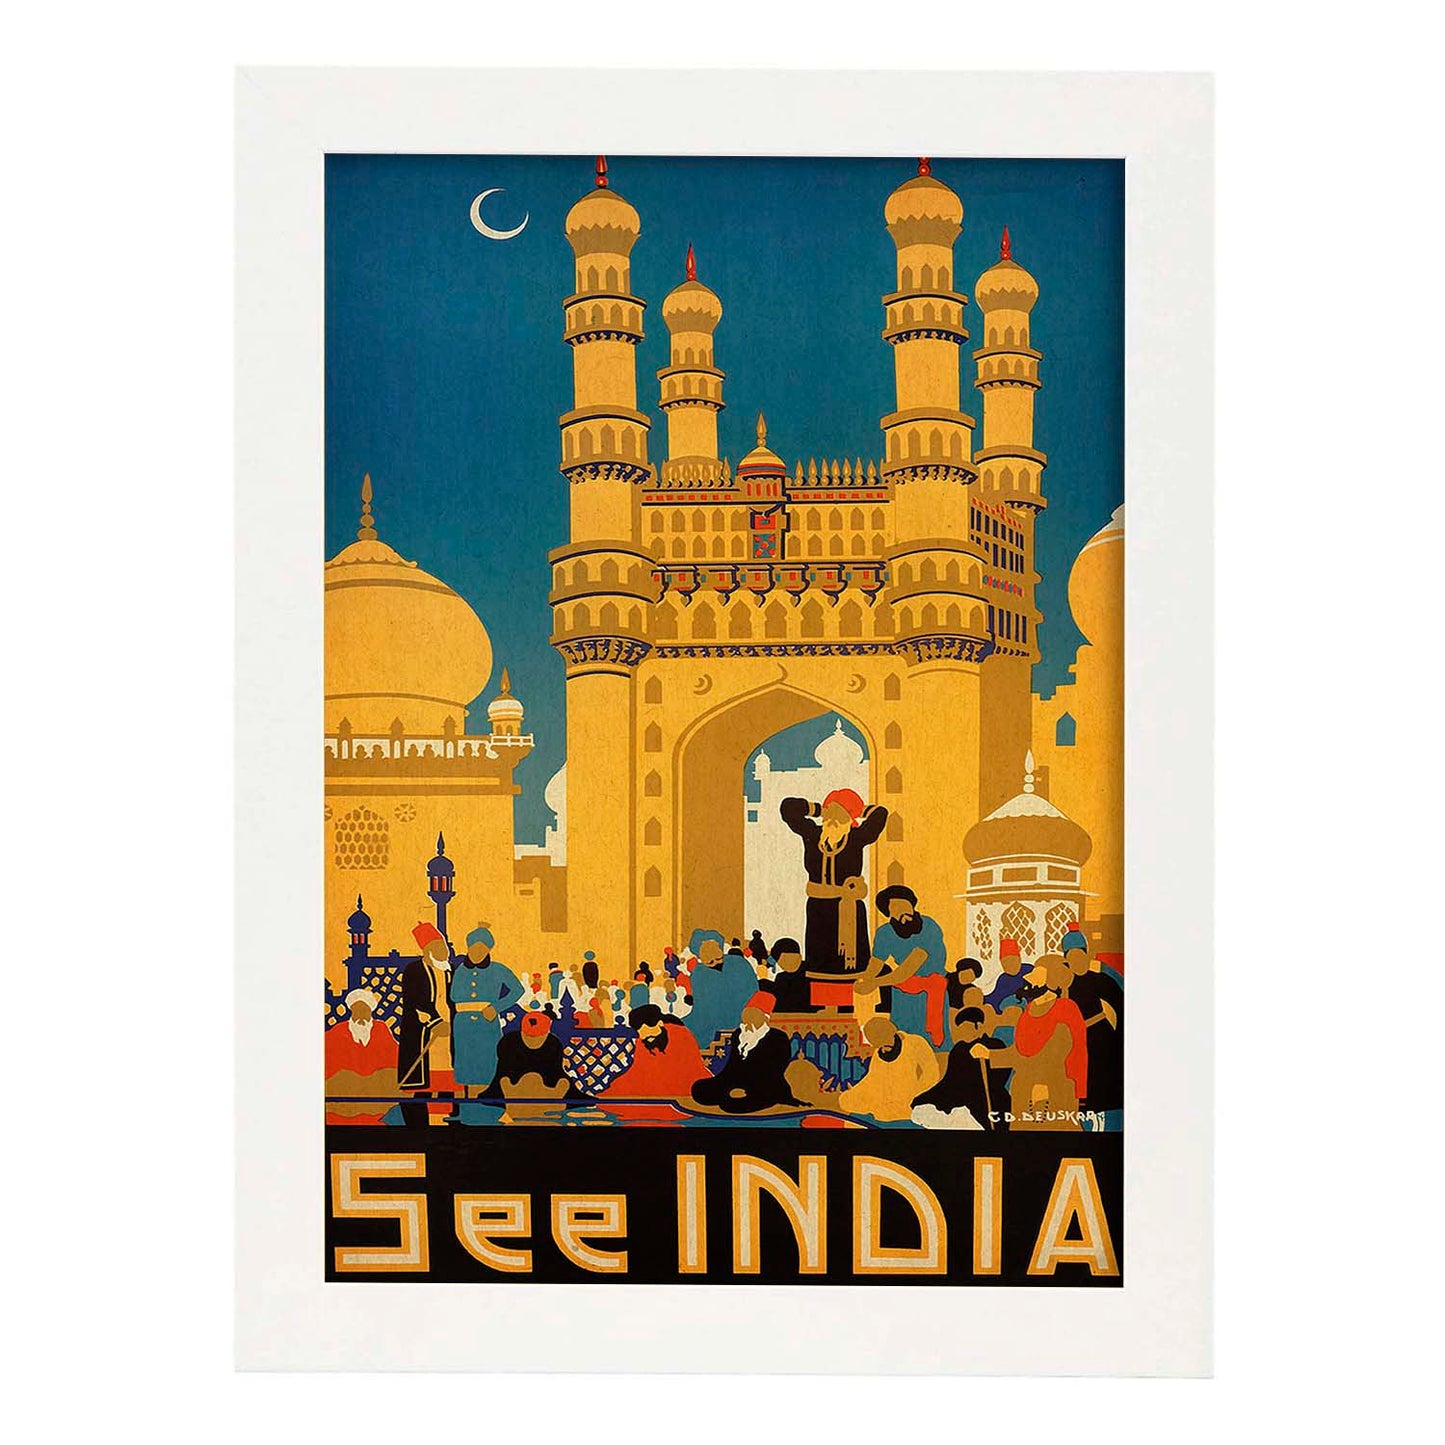 Poster vintage. Cartel vintage de Asia. Templo de India.-Artwork-Nacnic-A4-Marco Blanco-Nacnic Estudio SL